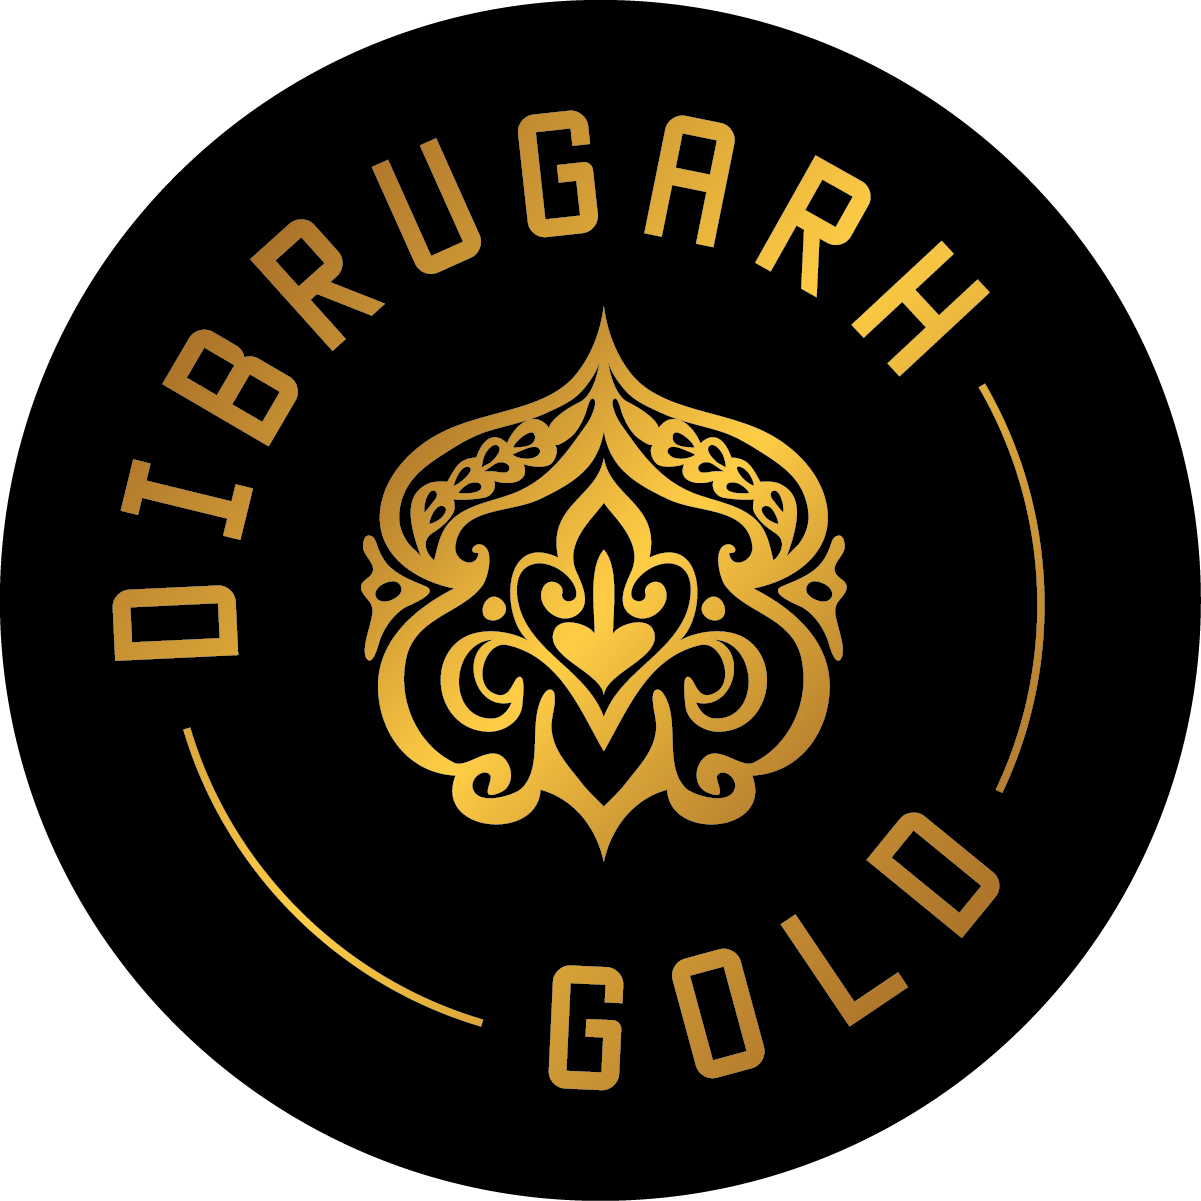 Dibrugarh Gold